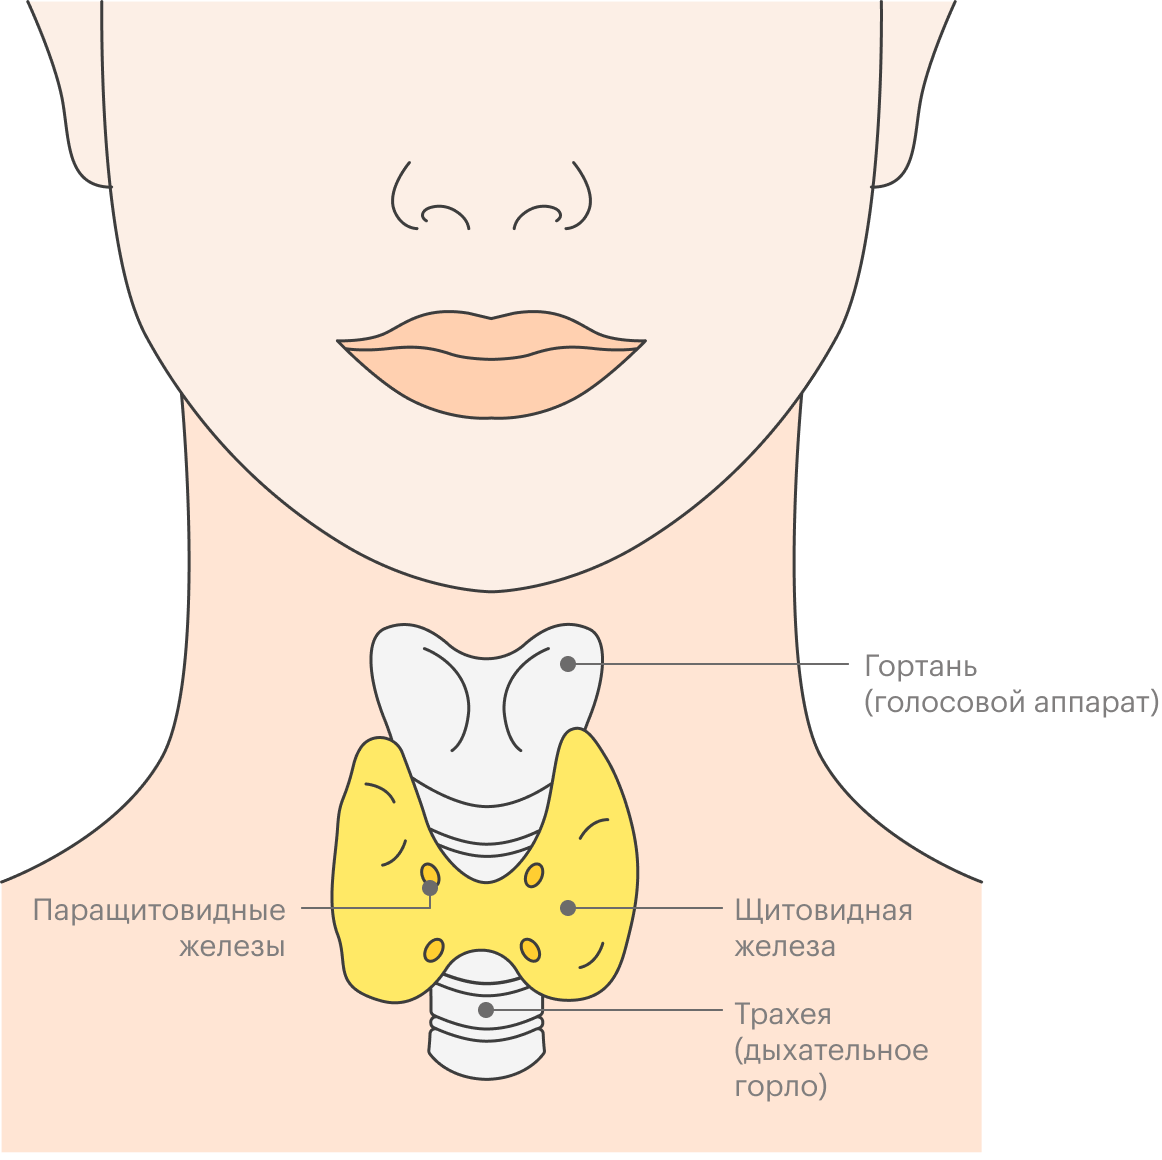 Щитовидная железа лежит почти под поверхностью кожи. Их разделяют только фасции — тоненькие пластинки соединительной ткани